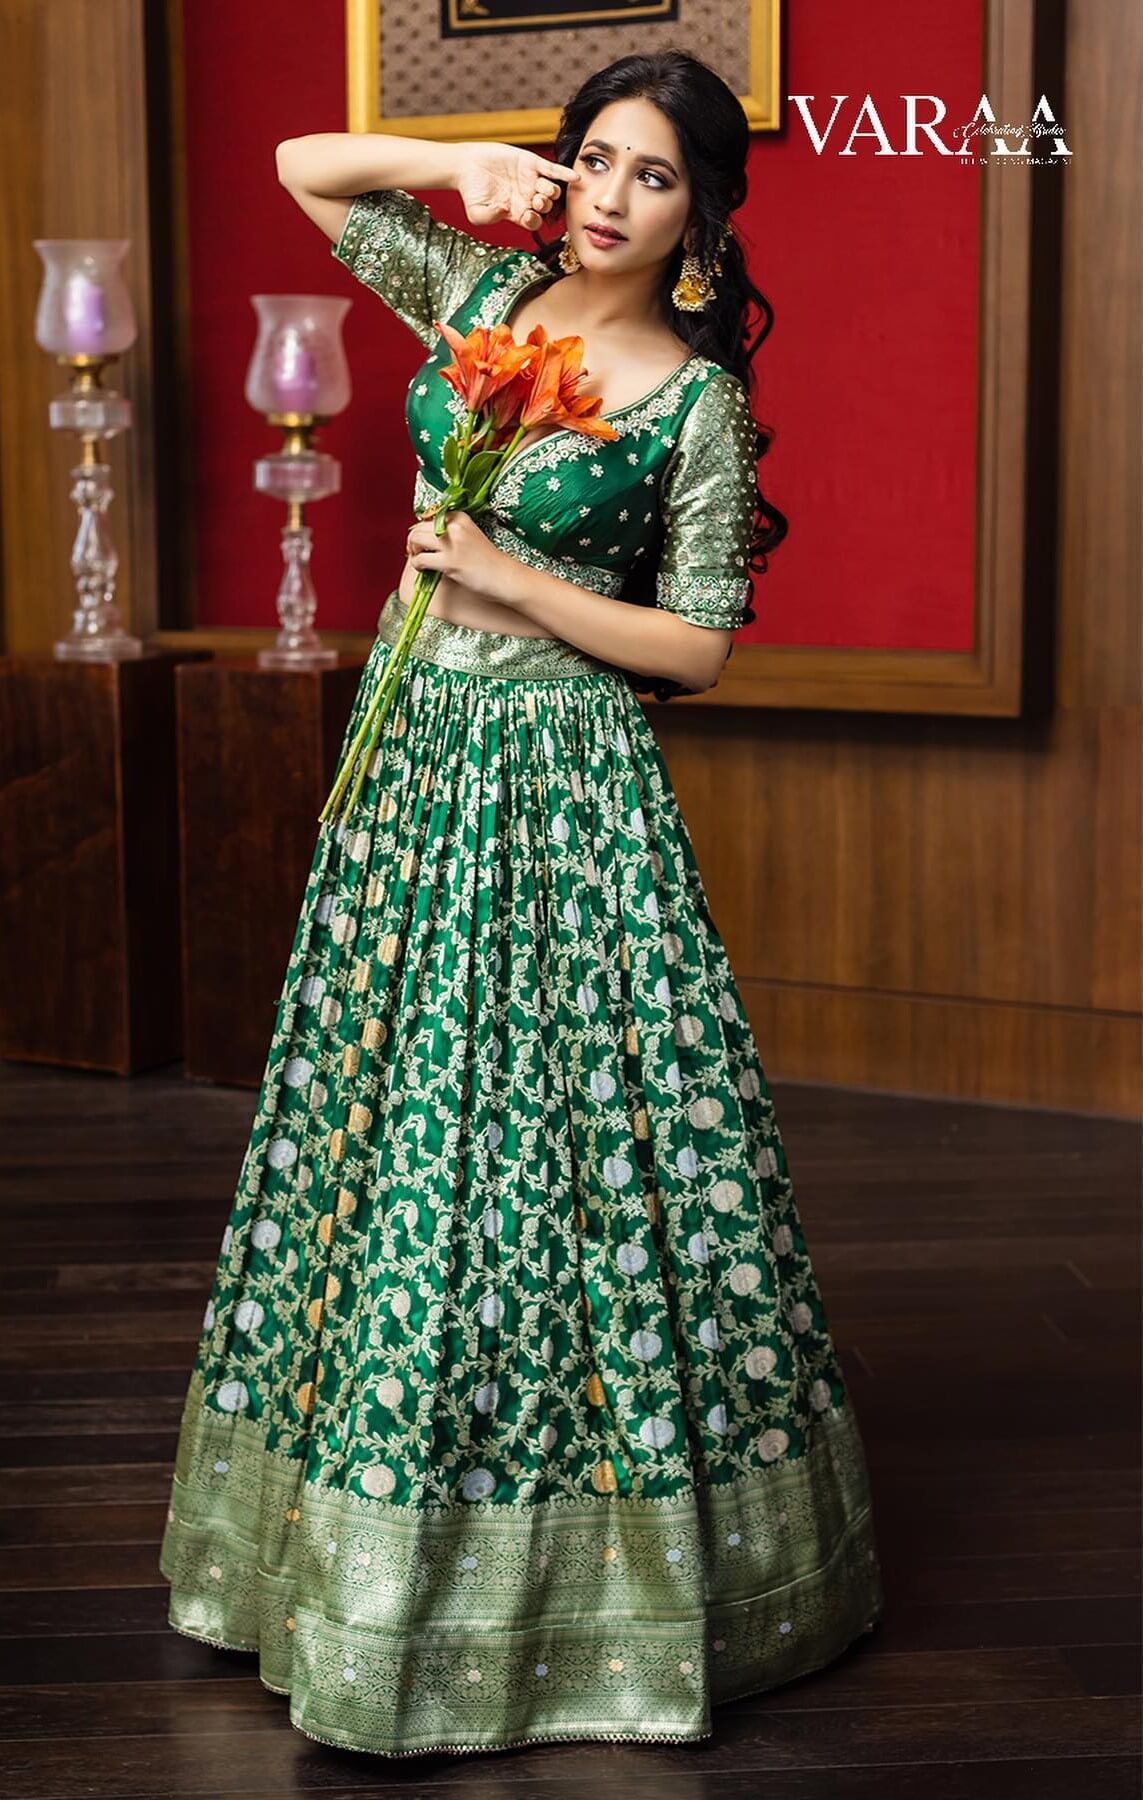 Manvitha Kamath In Green Zari Work Lehenga Outfit